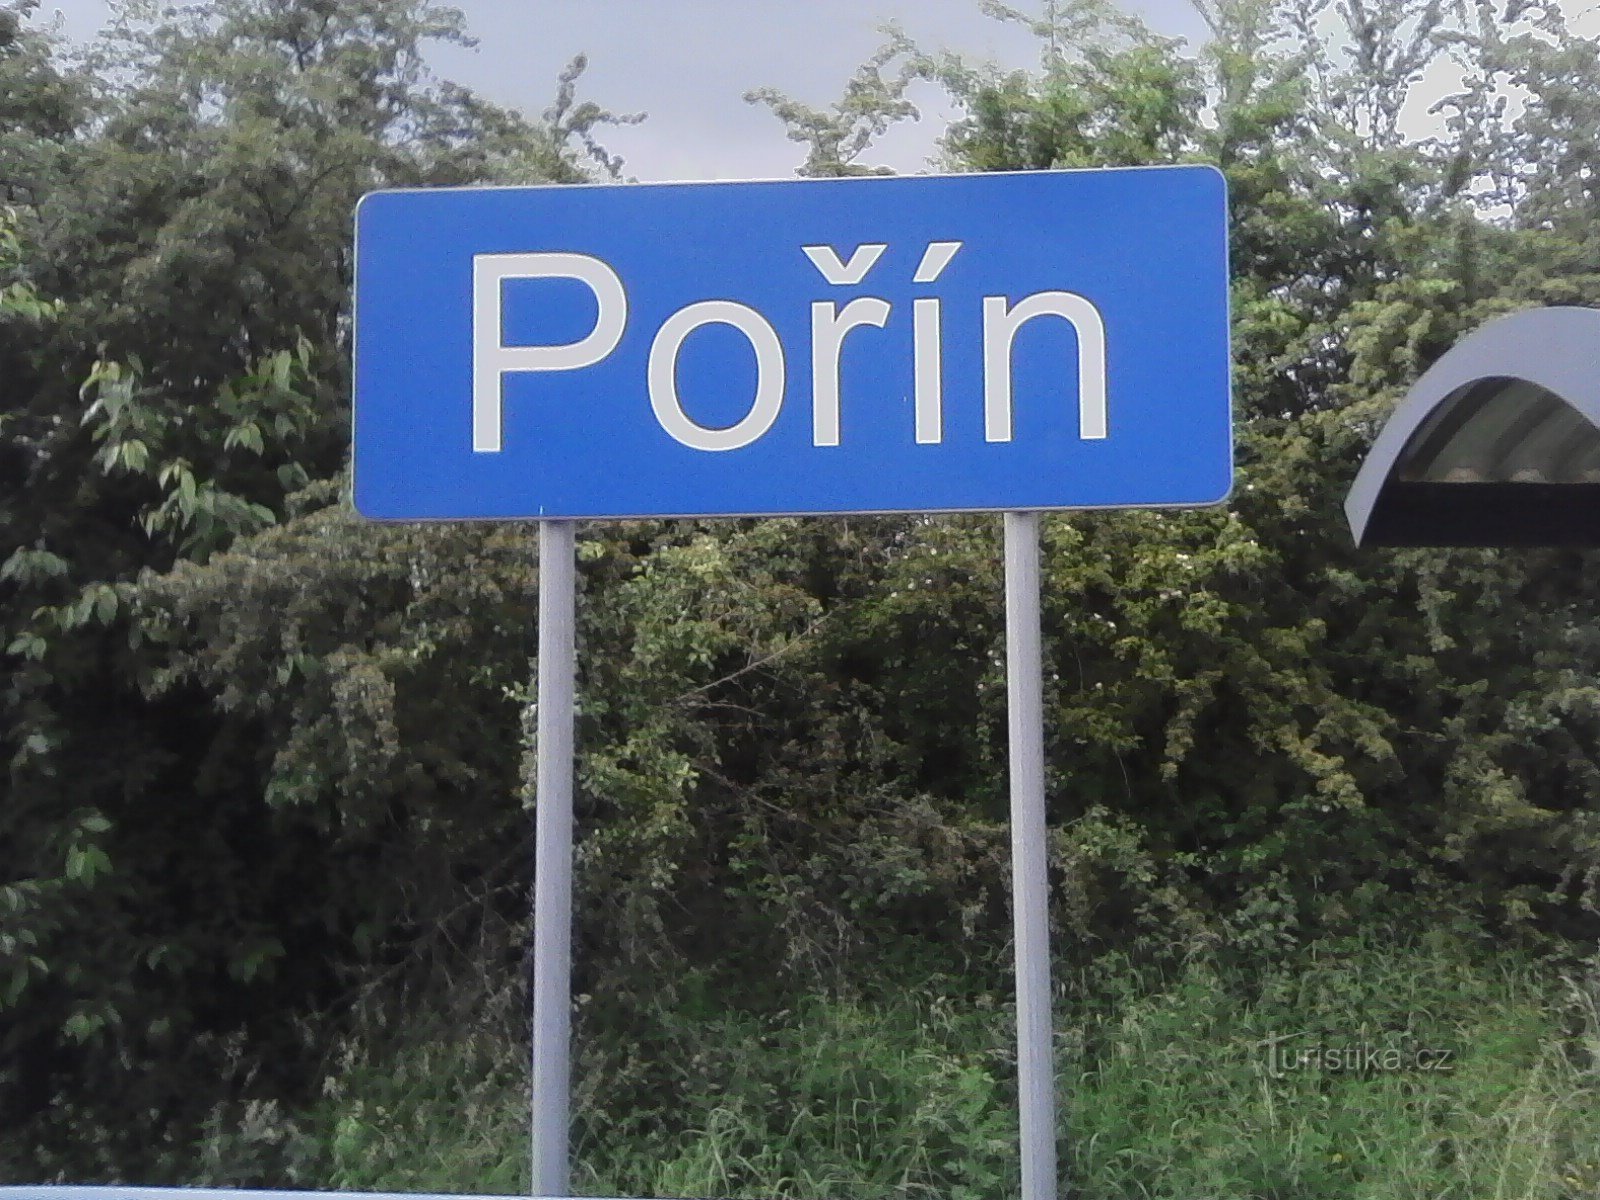 1. Stație de tren în Pořín - începutul călătoriei.